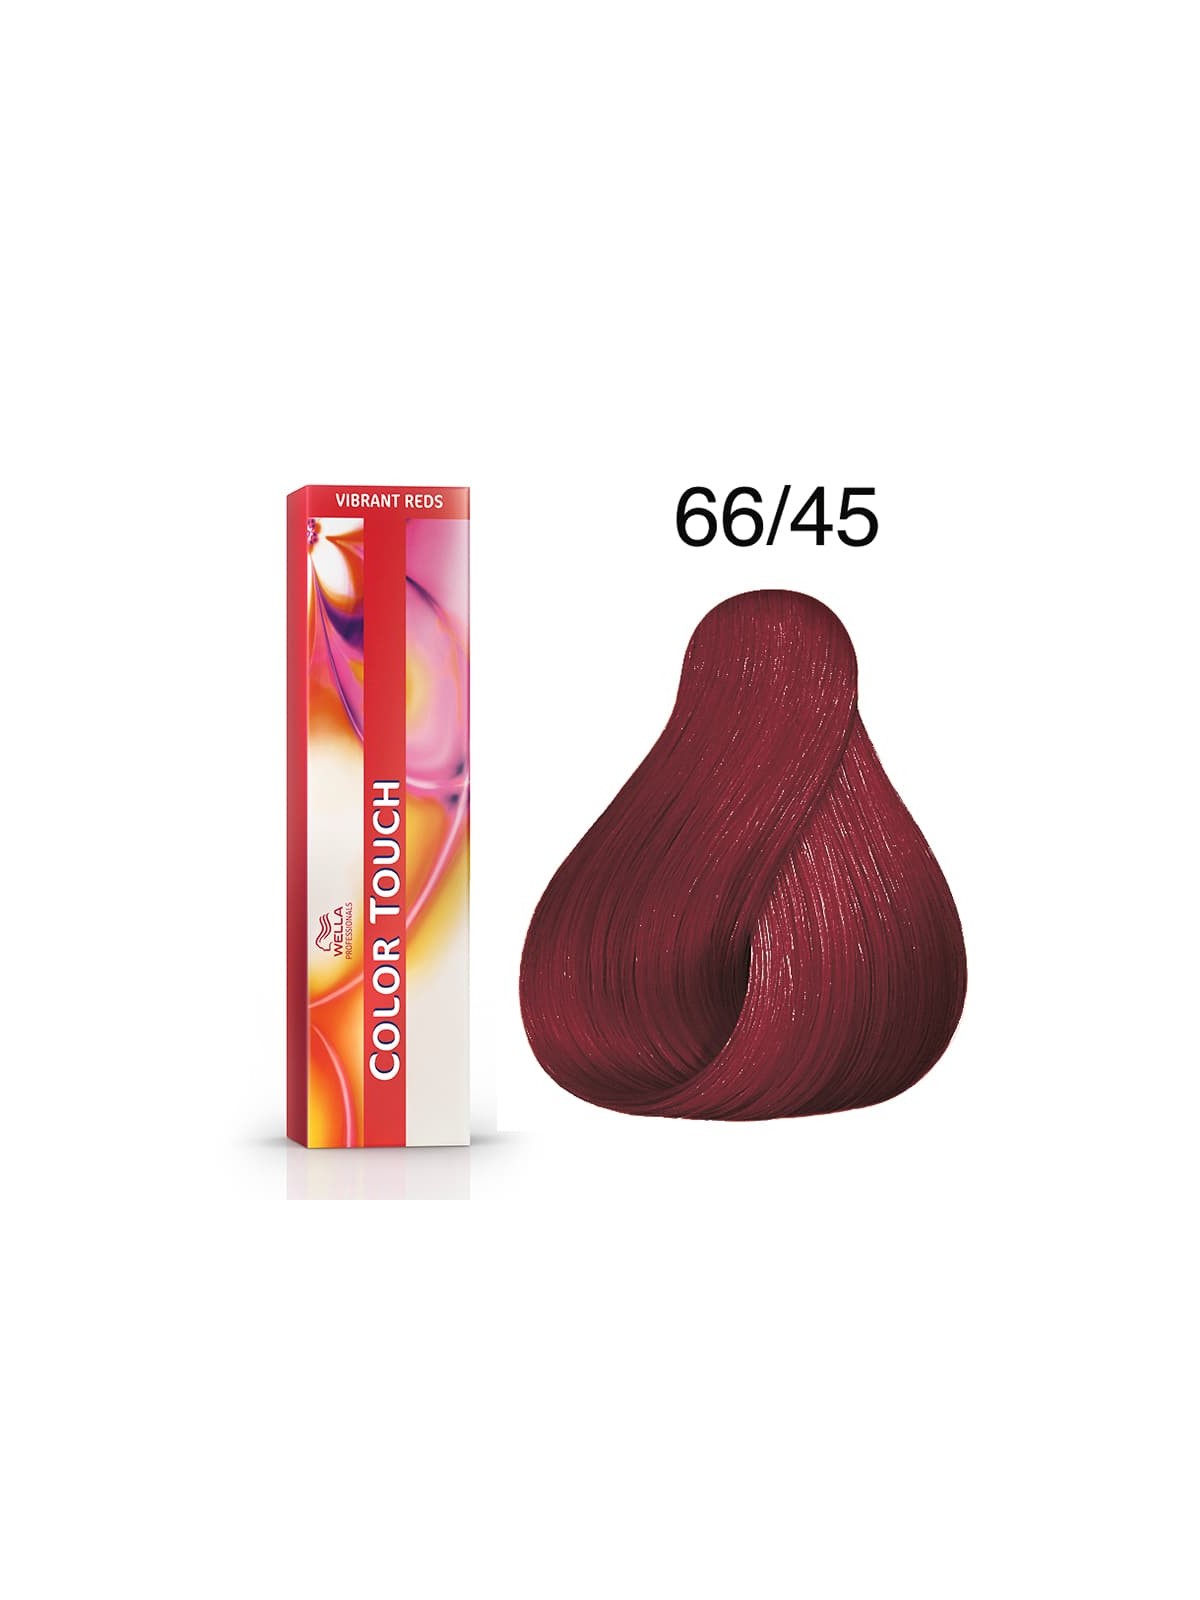 Tinte Wella Color Touch Vibrant Reds 66/45 Rubio Oscuro Intenso Cobrizo Caoba 60 ml.